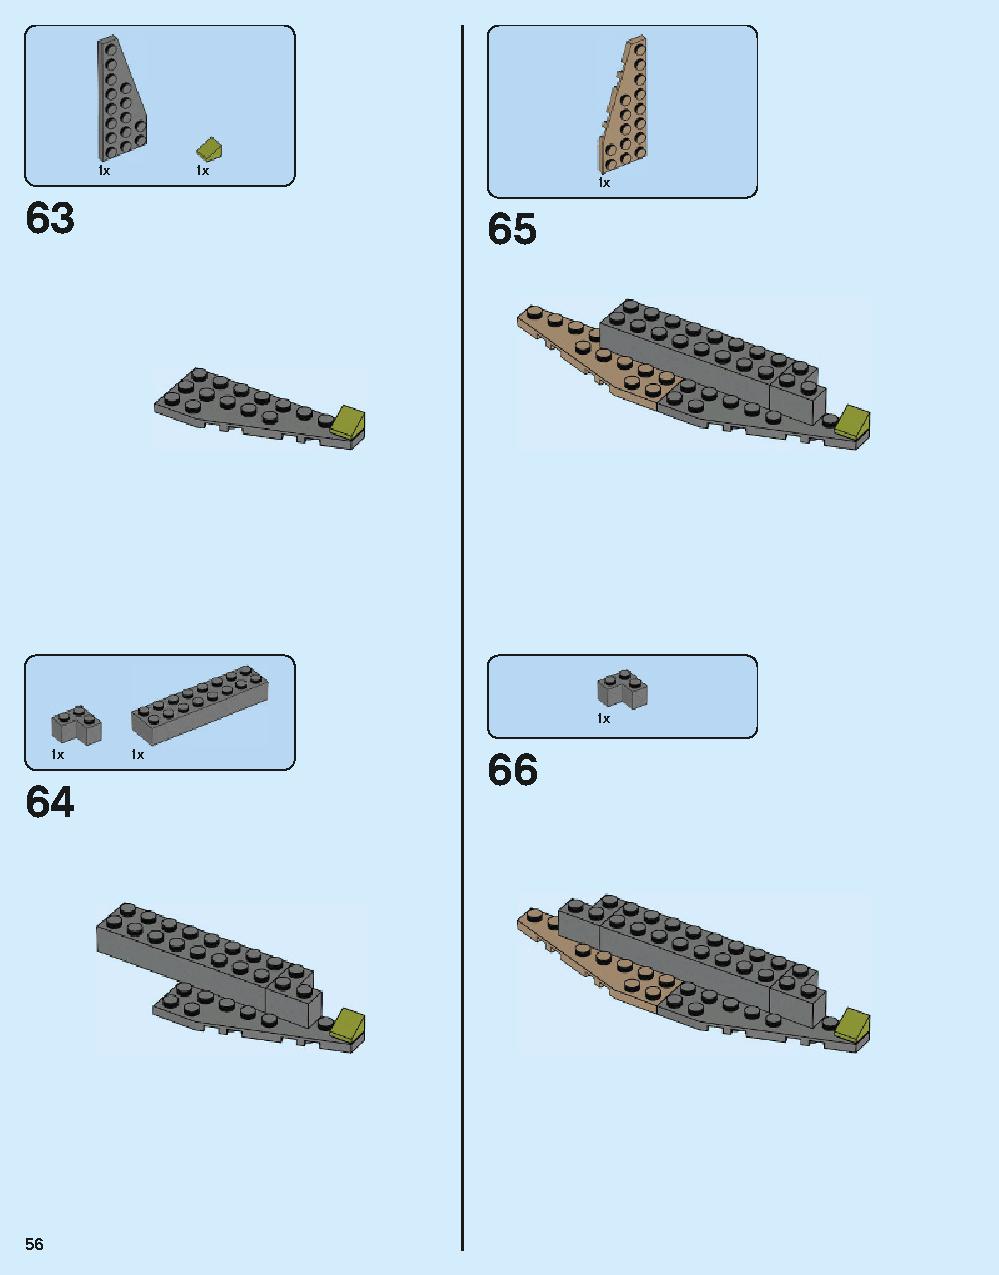 ホグワーツ城 71043 レゴの商品情報 レゴの説明書・組立方法 56 page